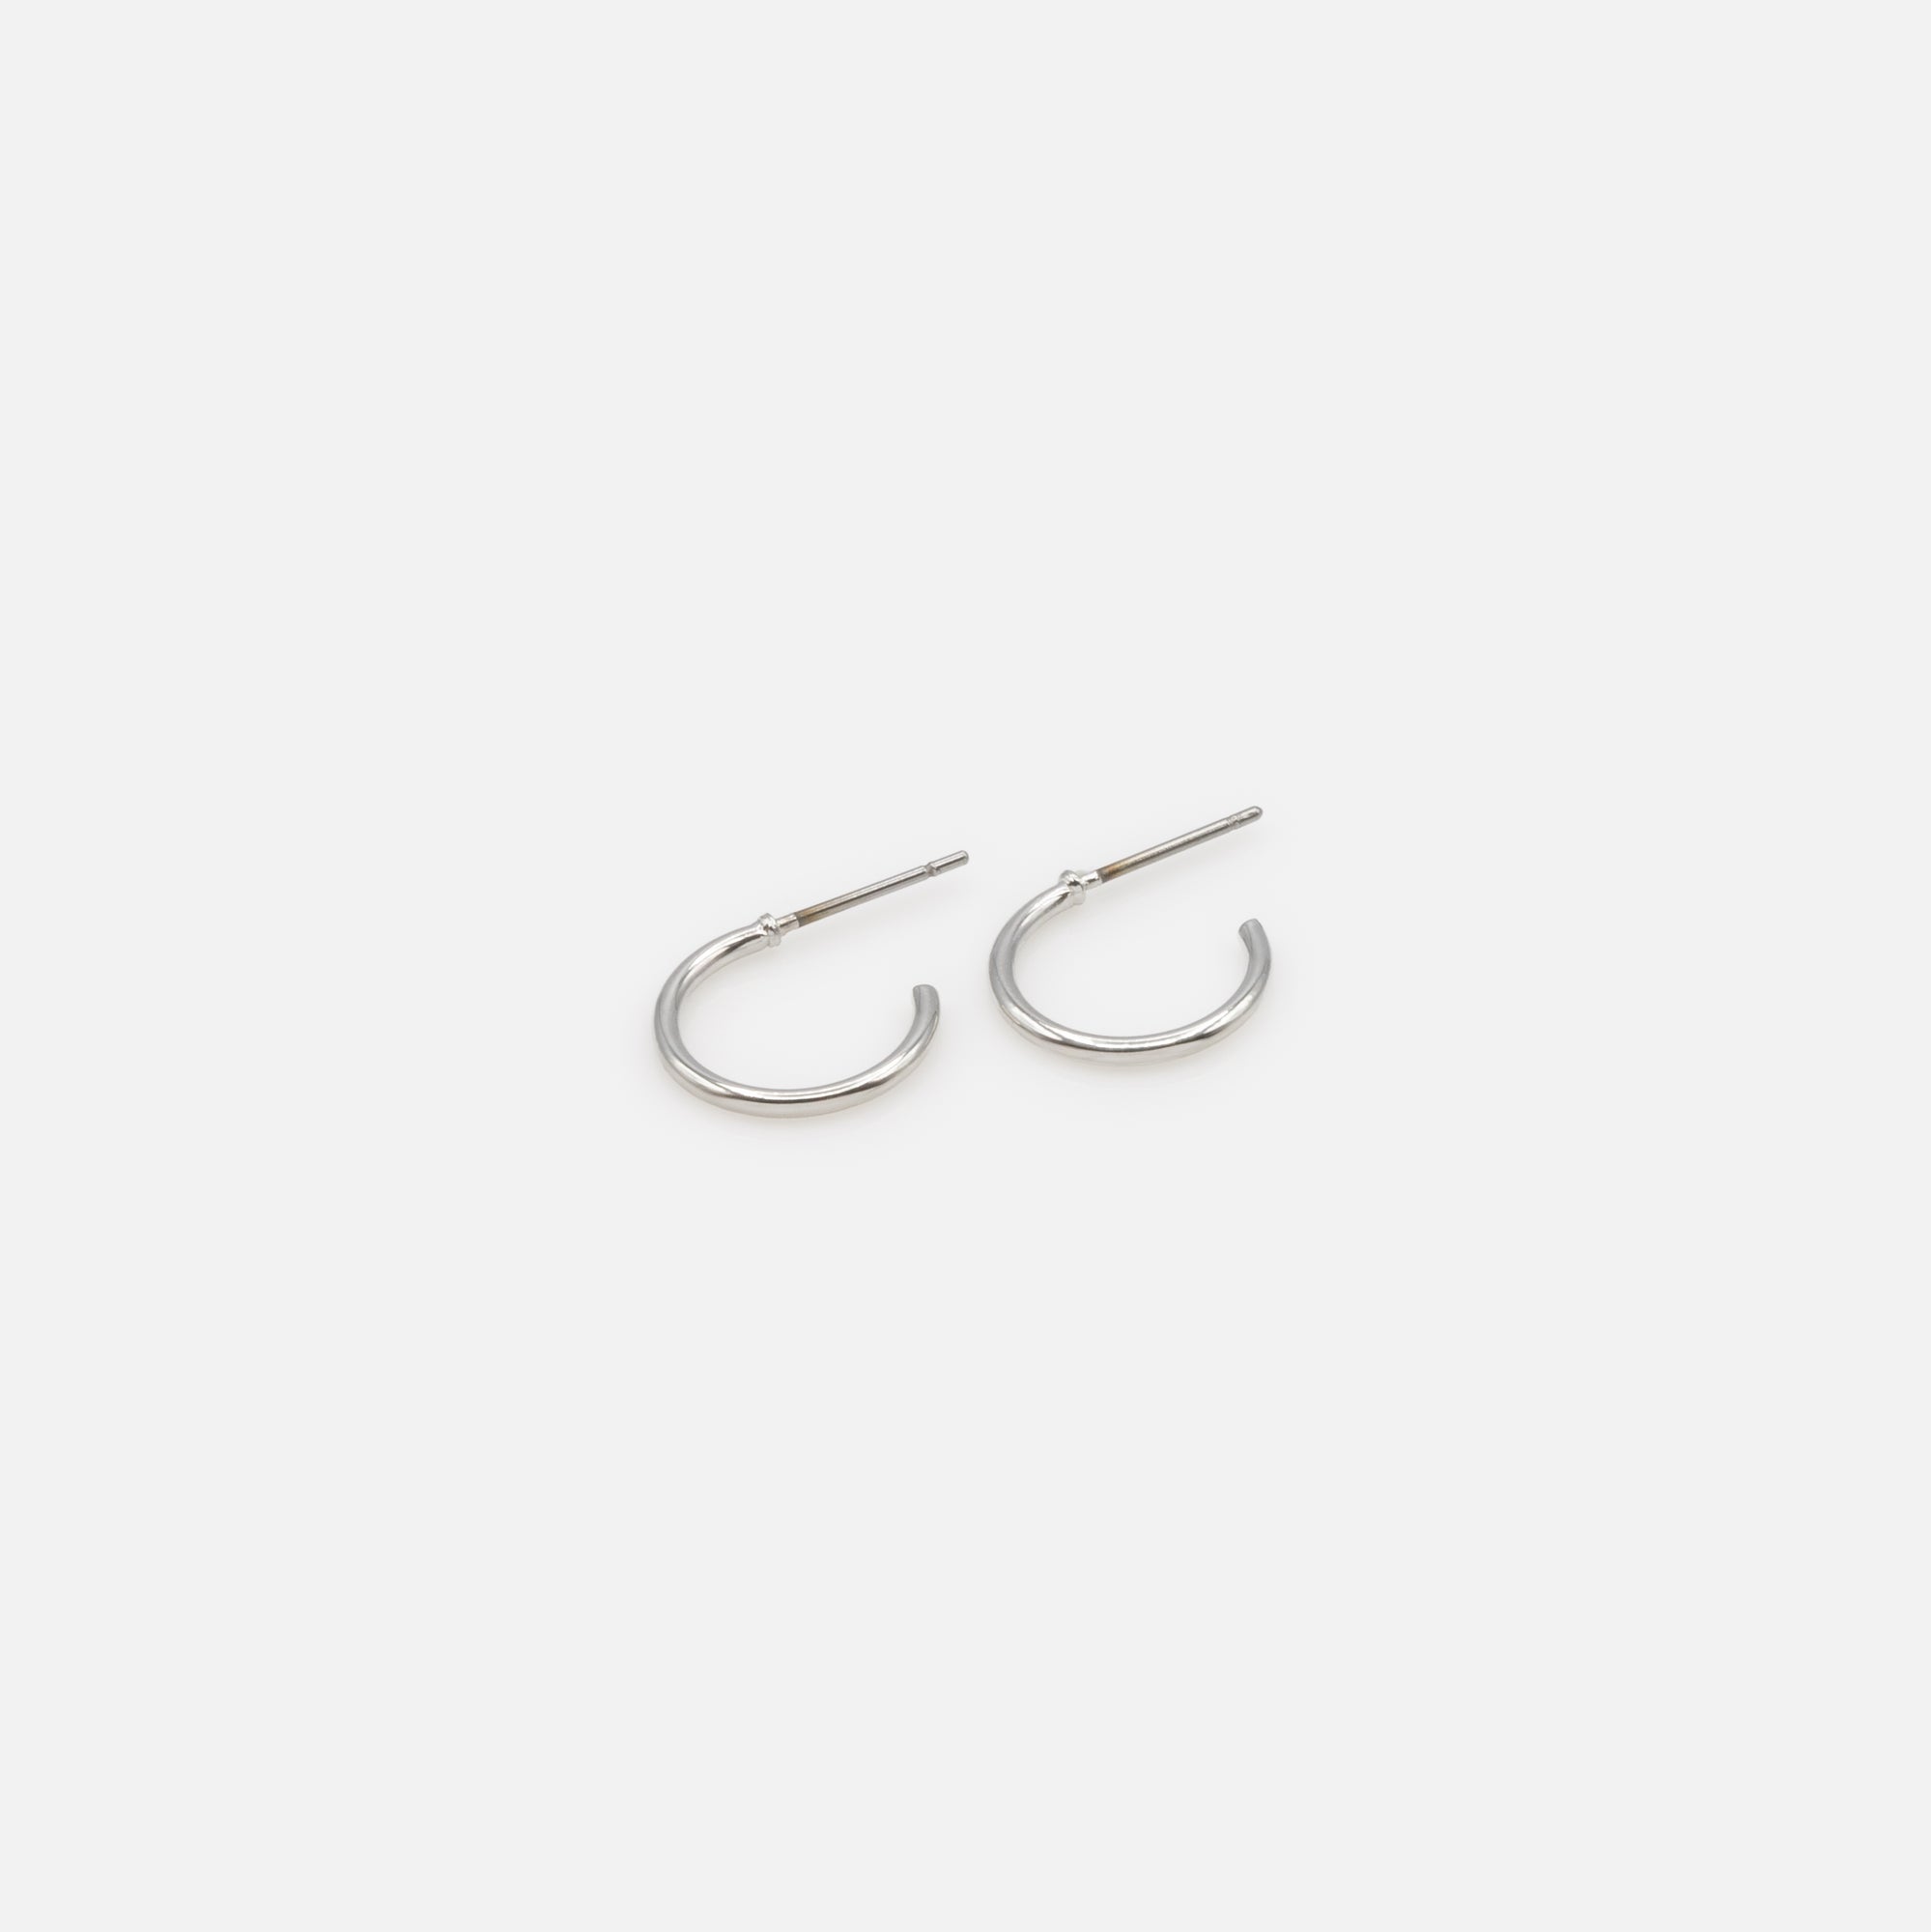 Trio de boucles d'oreilles anneaux argentés simples et torsadés